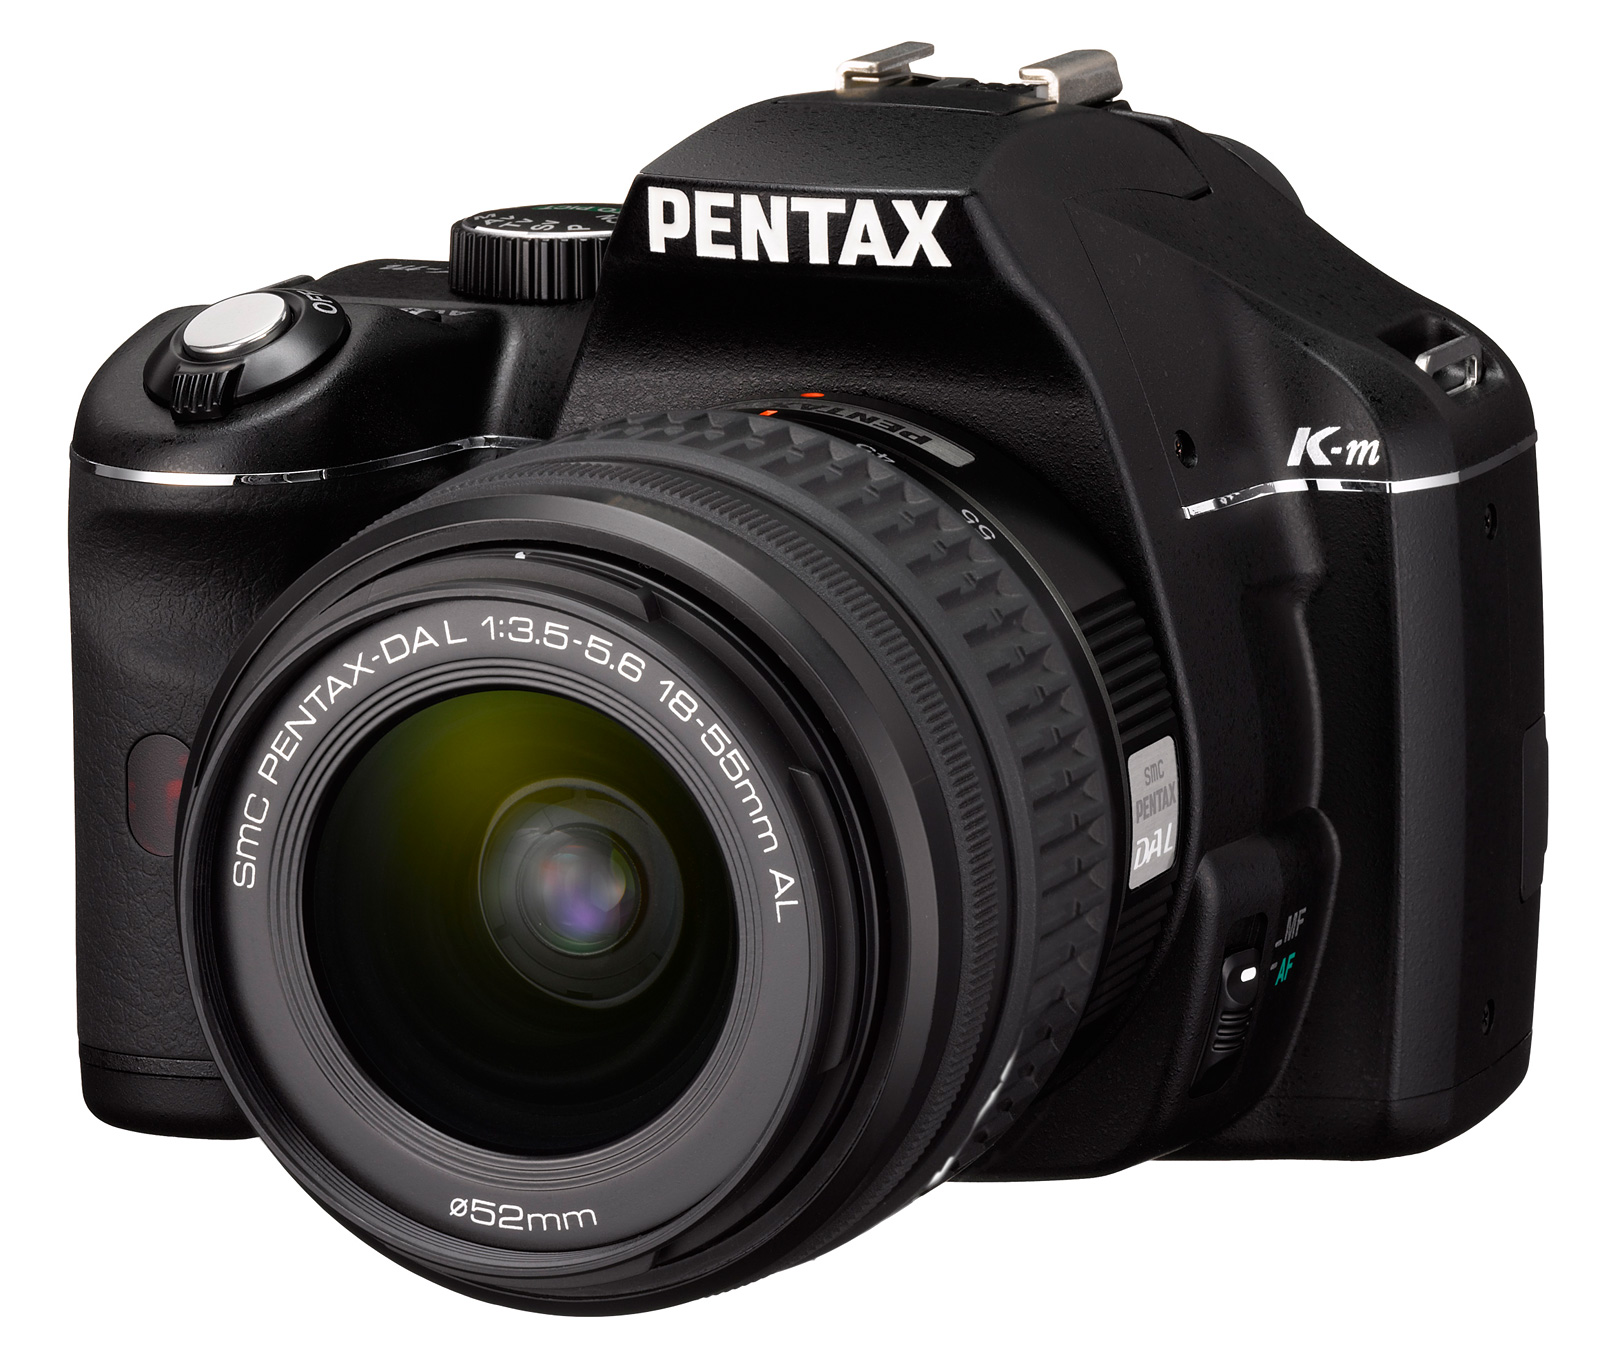 使いやすいエントリークラスのデジタル一眼レフカメラ 「PENTAX K-m